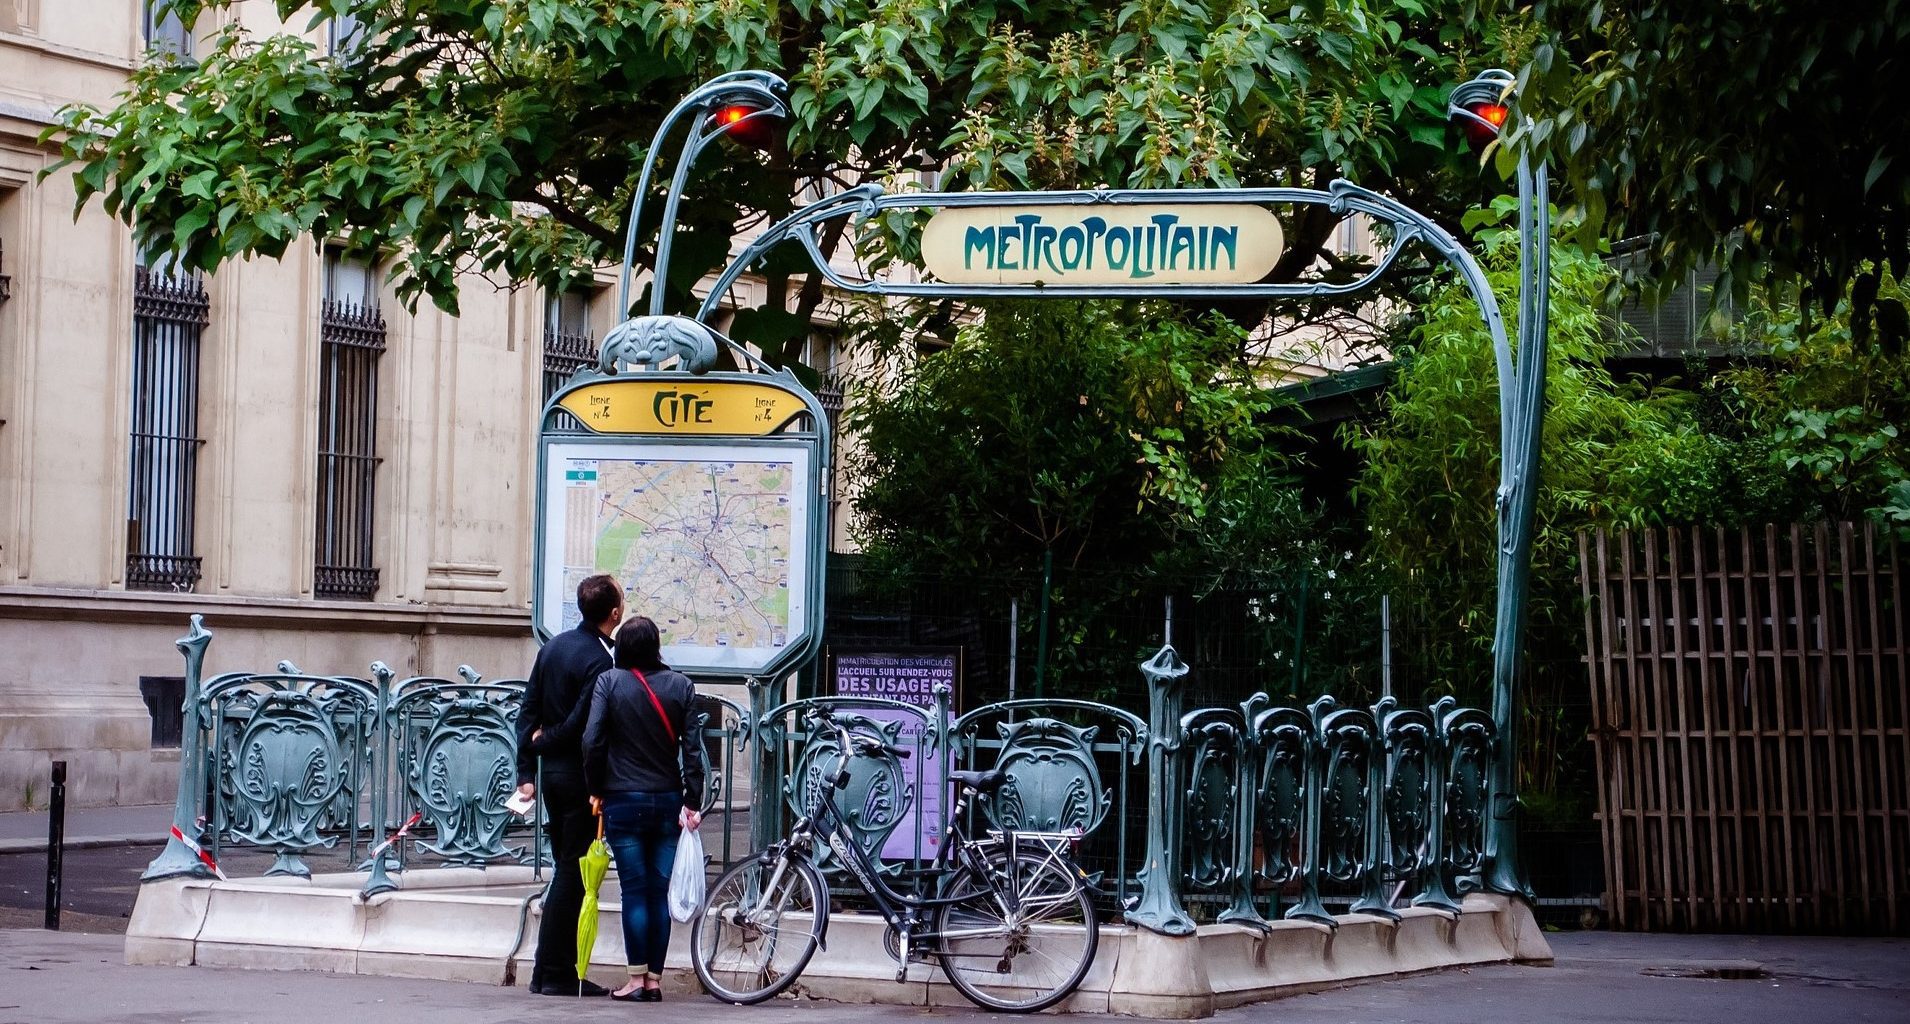 métro-cité-paris-zigzag